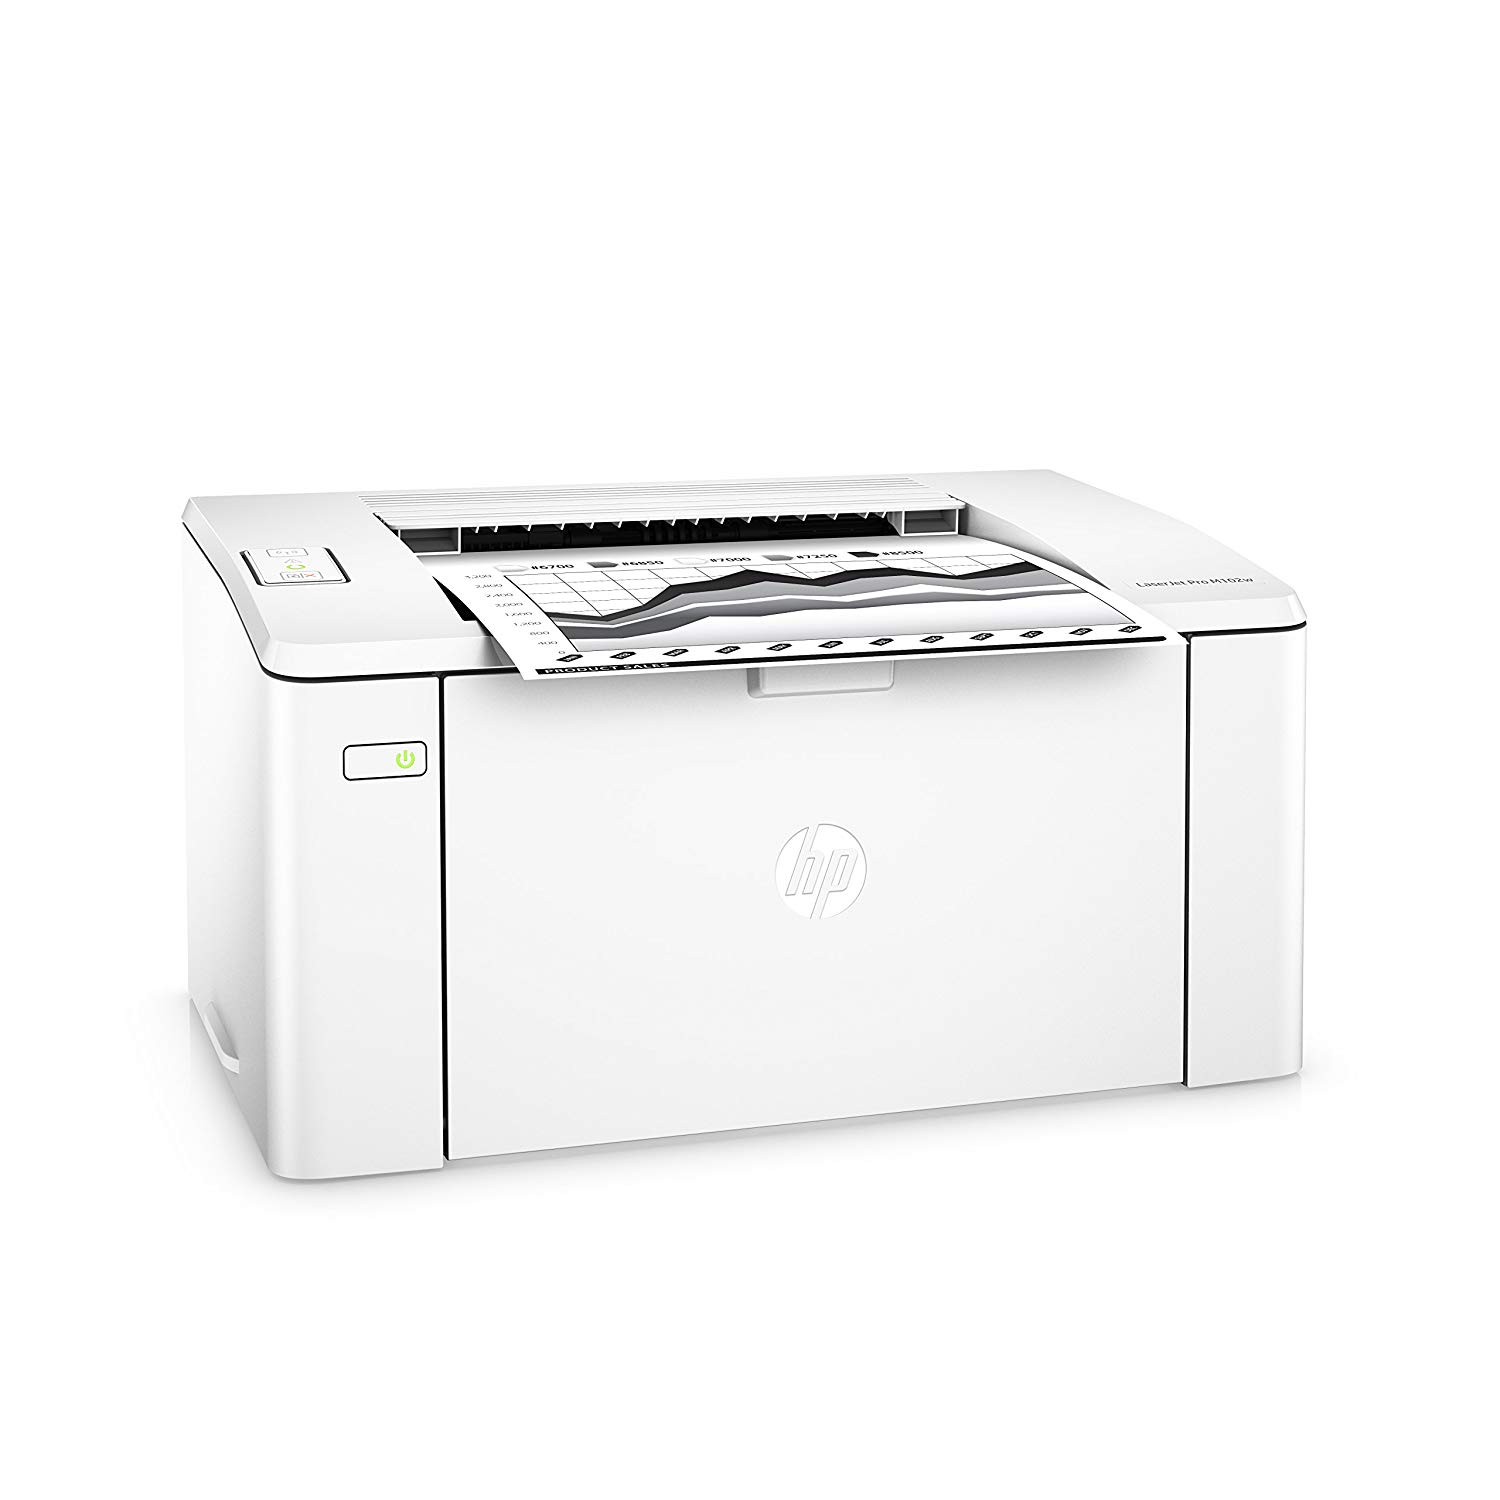 HP Bezprzewodowa drukarka laserowa  LaserJet Pro M102w (G3Q35A). Zastępuje drukarkę laserową  P1102